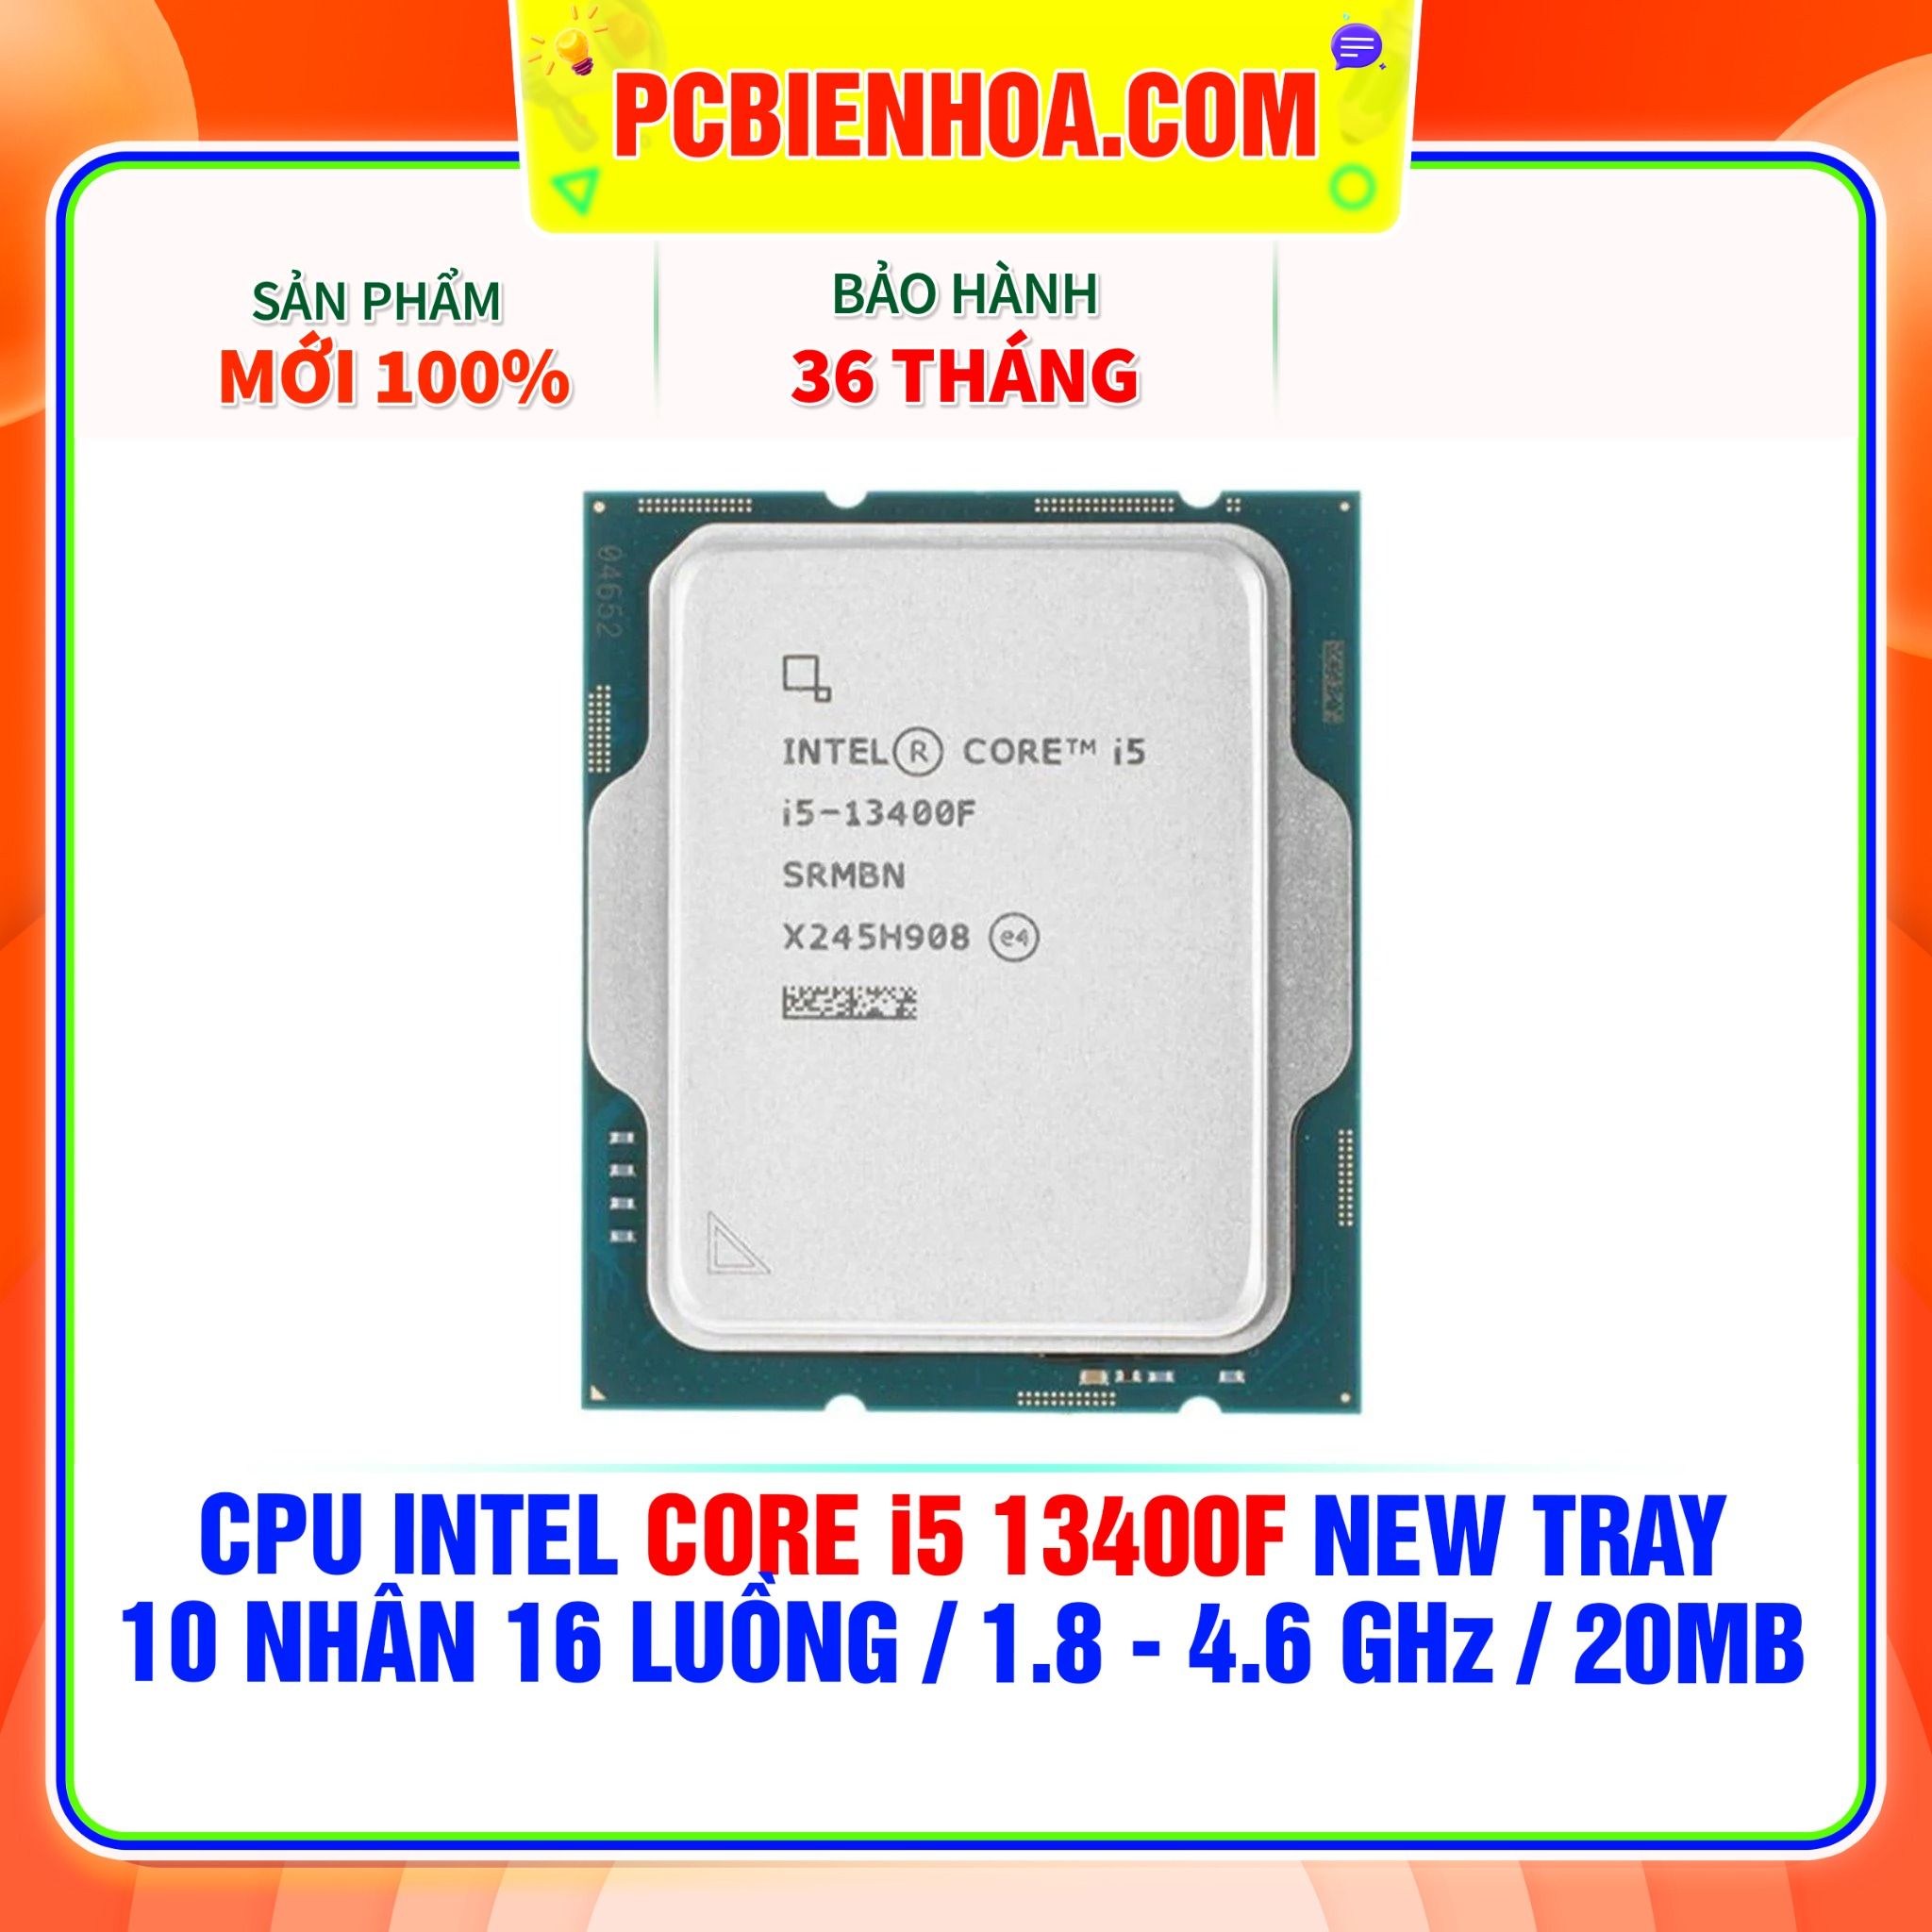  CPU INTEL CORE i5 13400F NEW TRAY - CHƯA KÈM TẢN NHIỆT ( 10 NHÂN 16 LUỒNG / 1.8 - 4.6 GHz / 20MB ) 